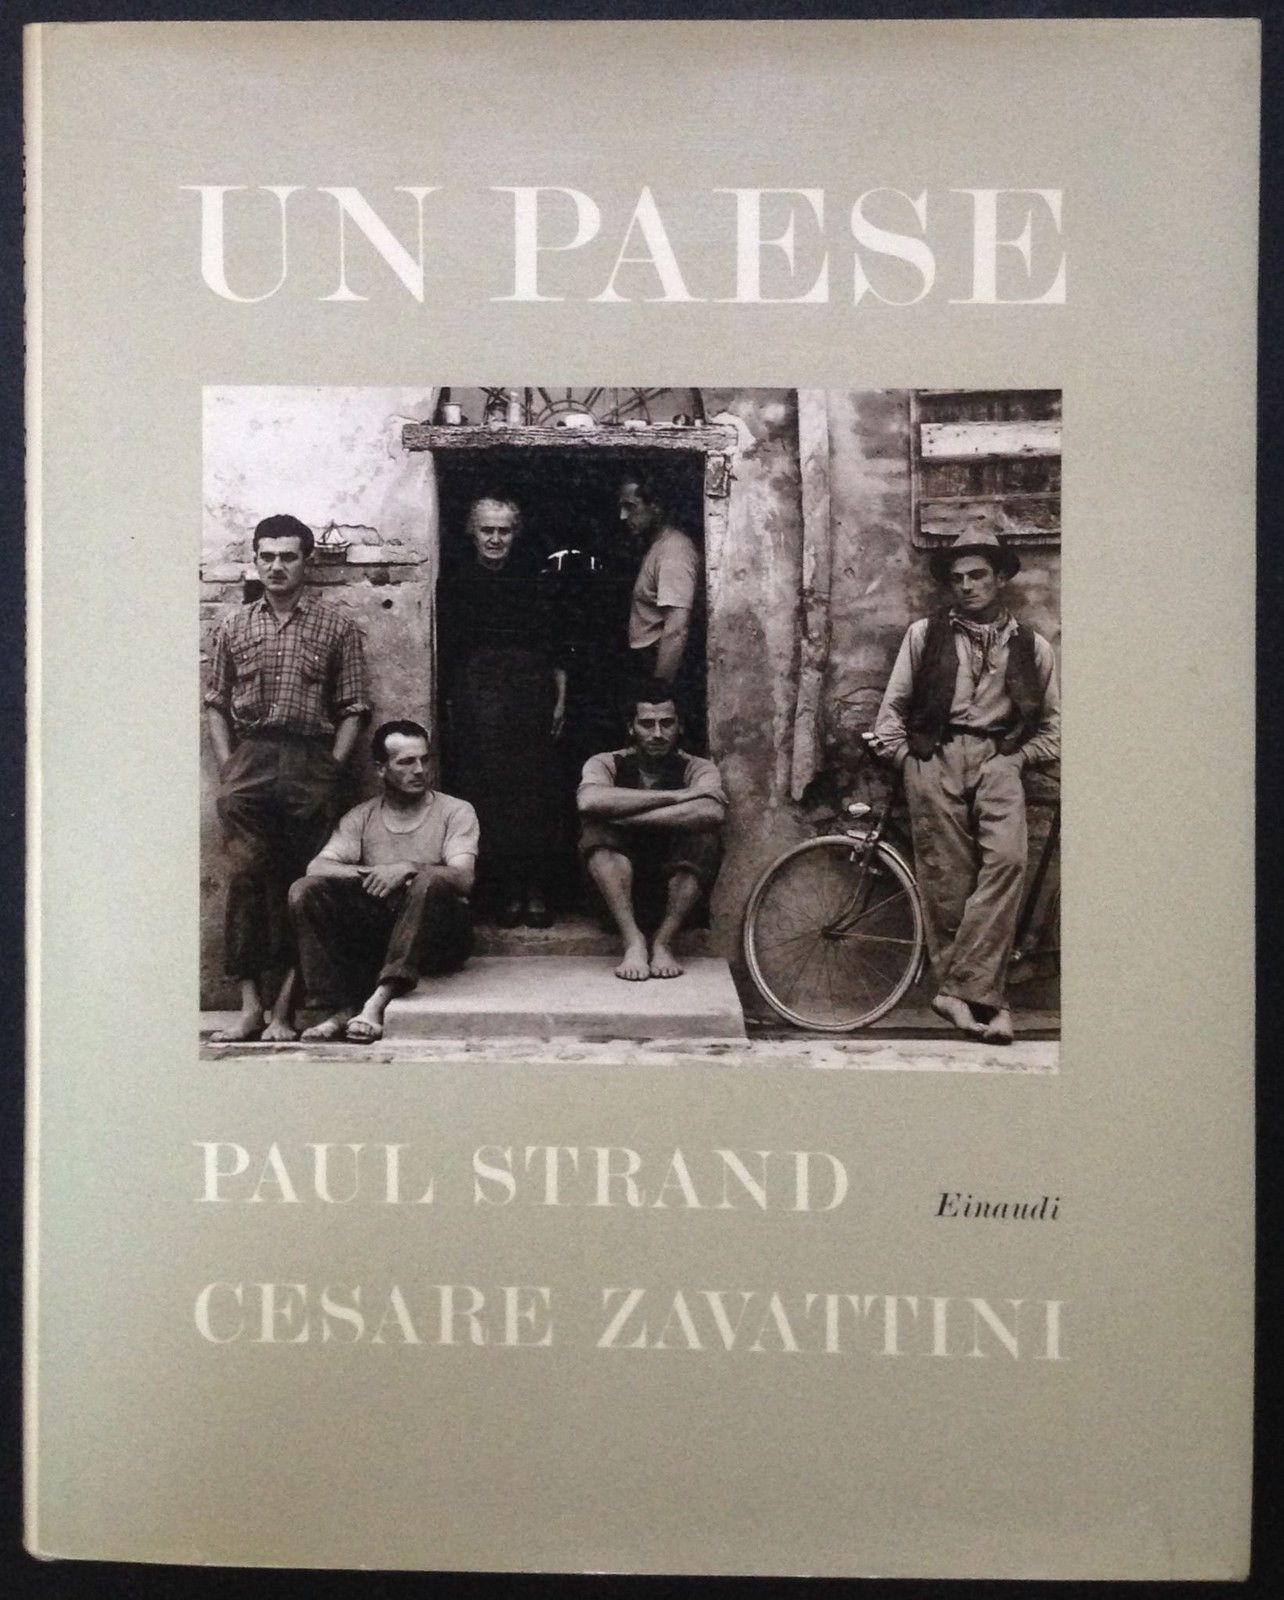 Un paese di Paul Strand (fotografie) e Cesare Zavattini (testo) – Prima edizione Einaudi 1955